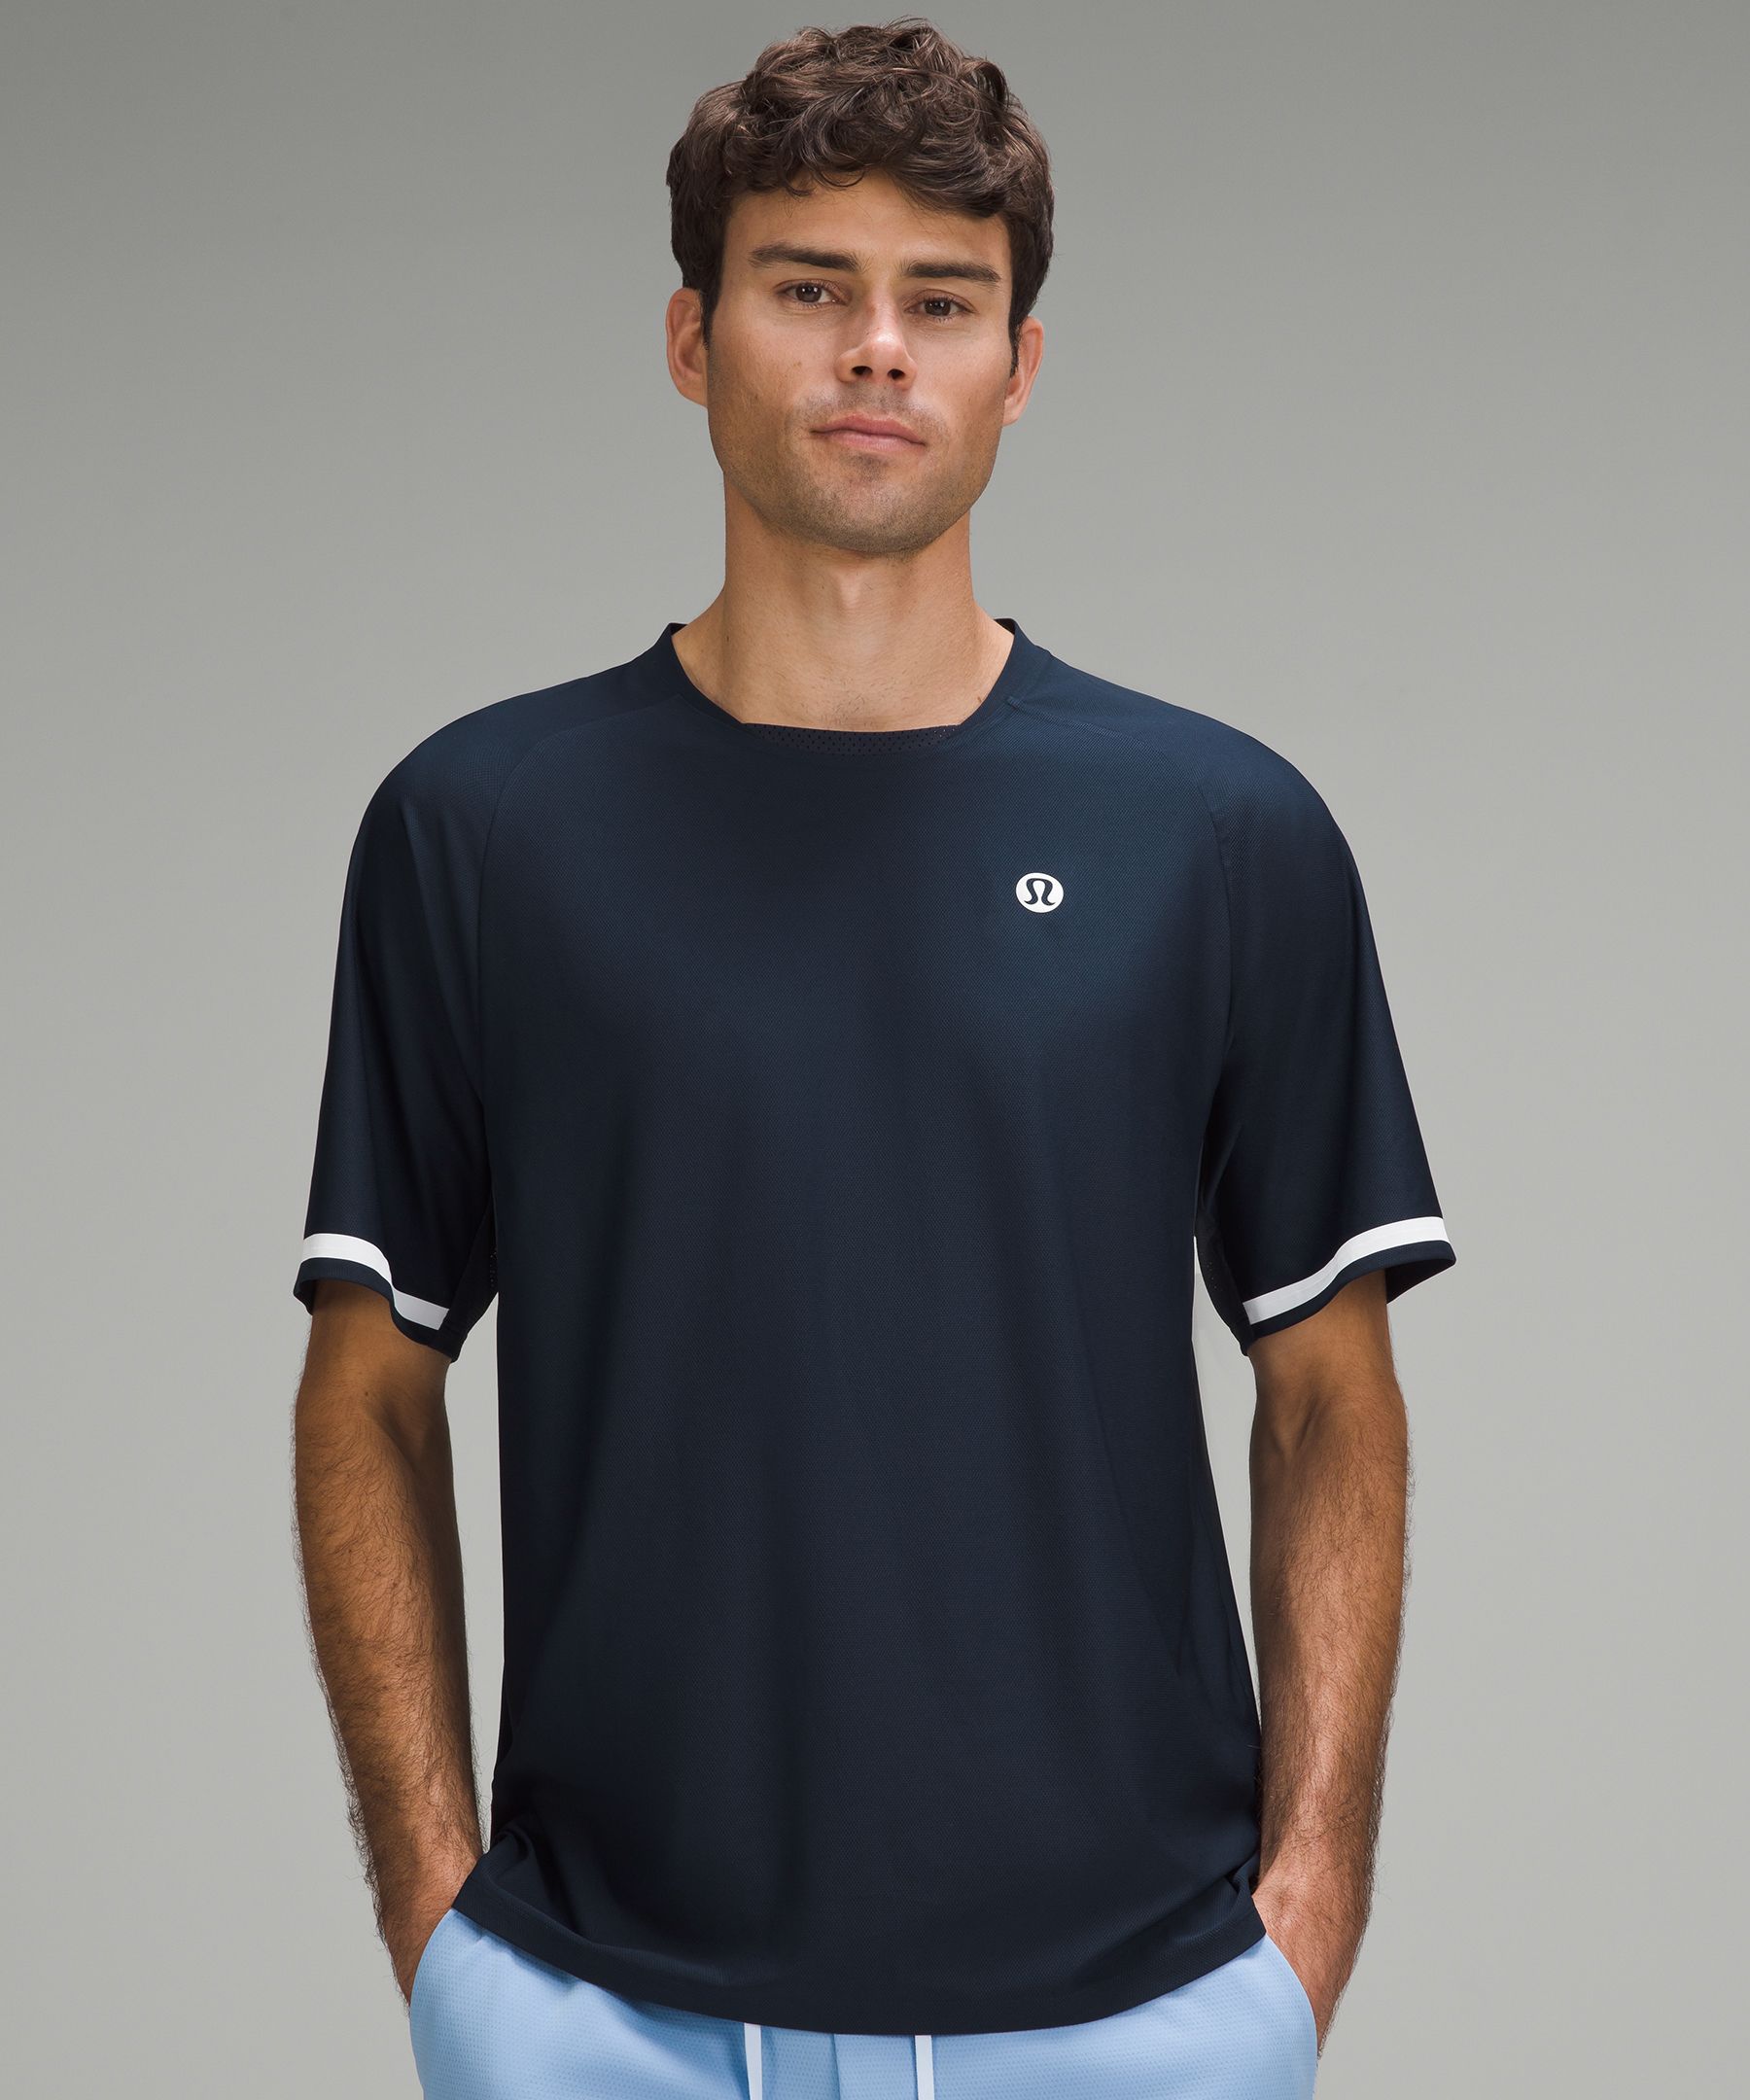 Tennis Short-Sleeve Shirt | Men's Short Sleeve Shirts & Tee's